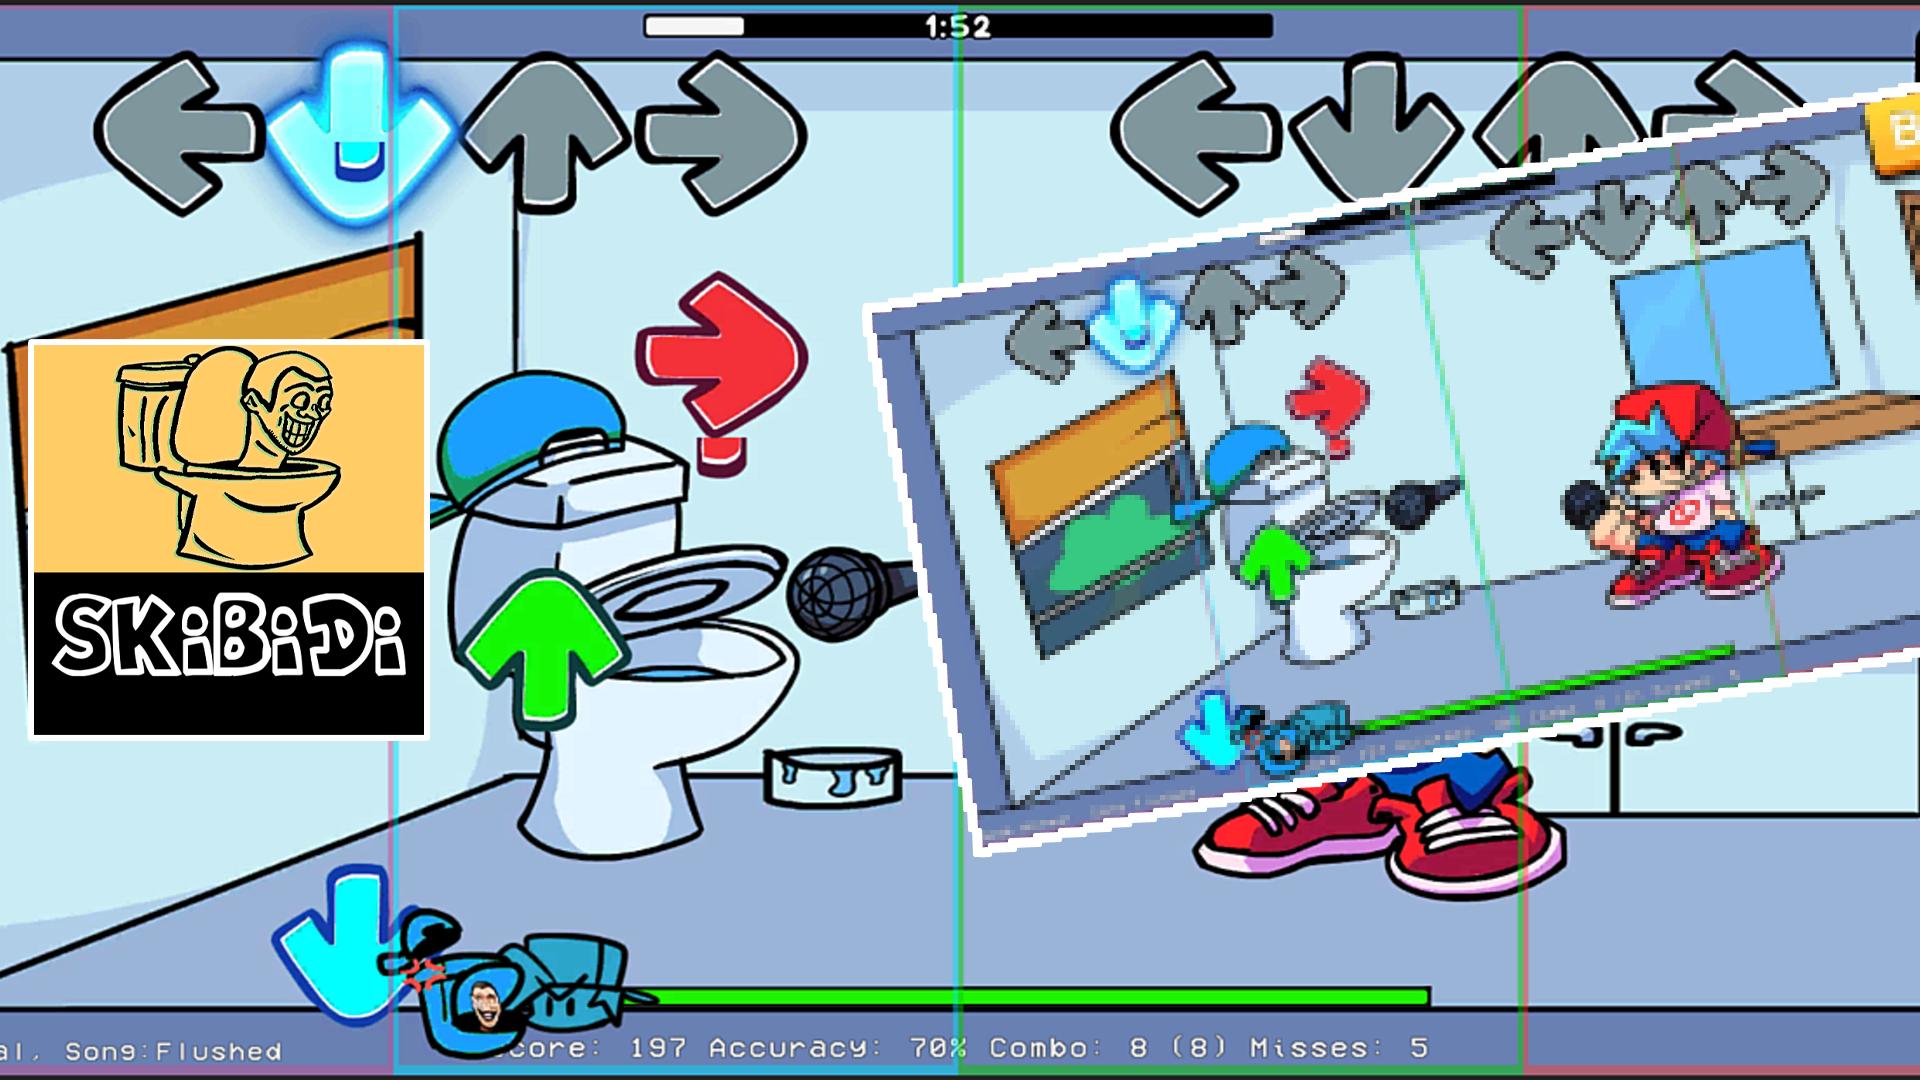 Игру туалет файв. Скиби туалет в графическом редакторе. Файлы игры туалет лаборатория. Защита башни туалета Skibi коды. Взломанная игра туалет лаборатория.